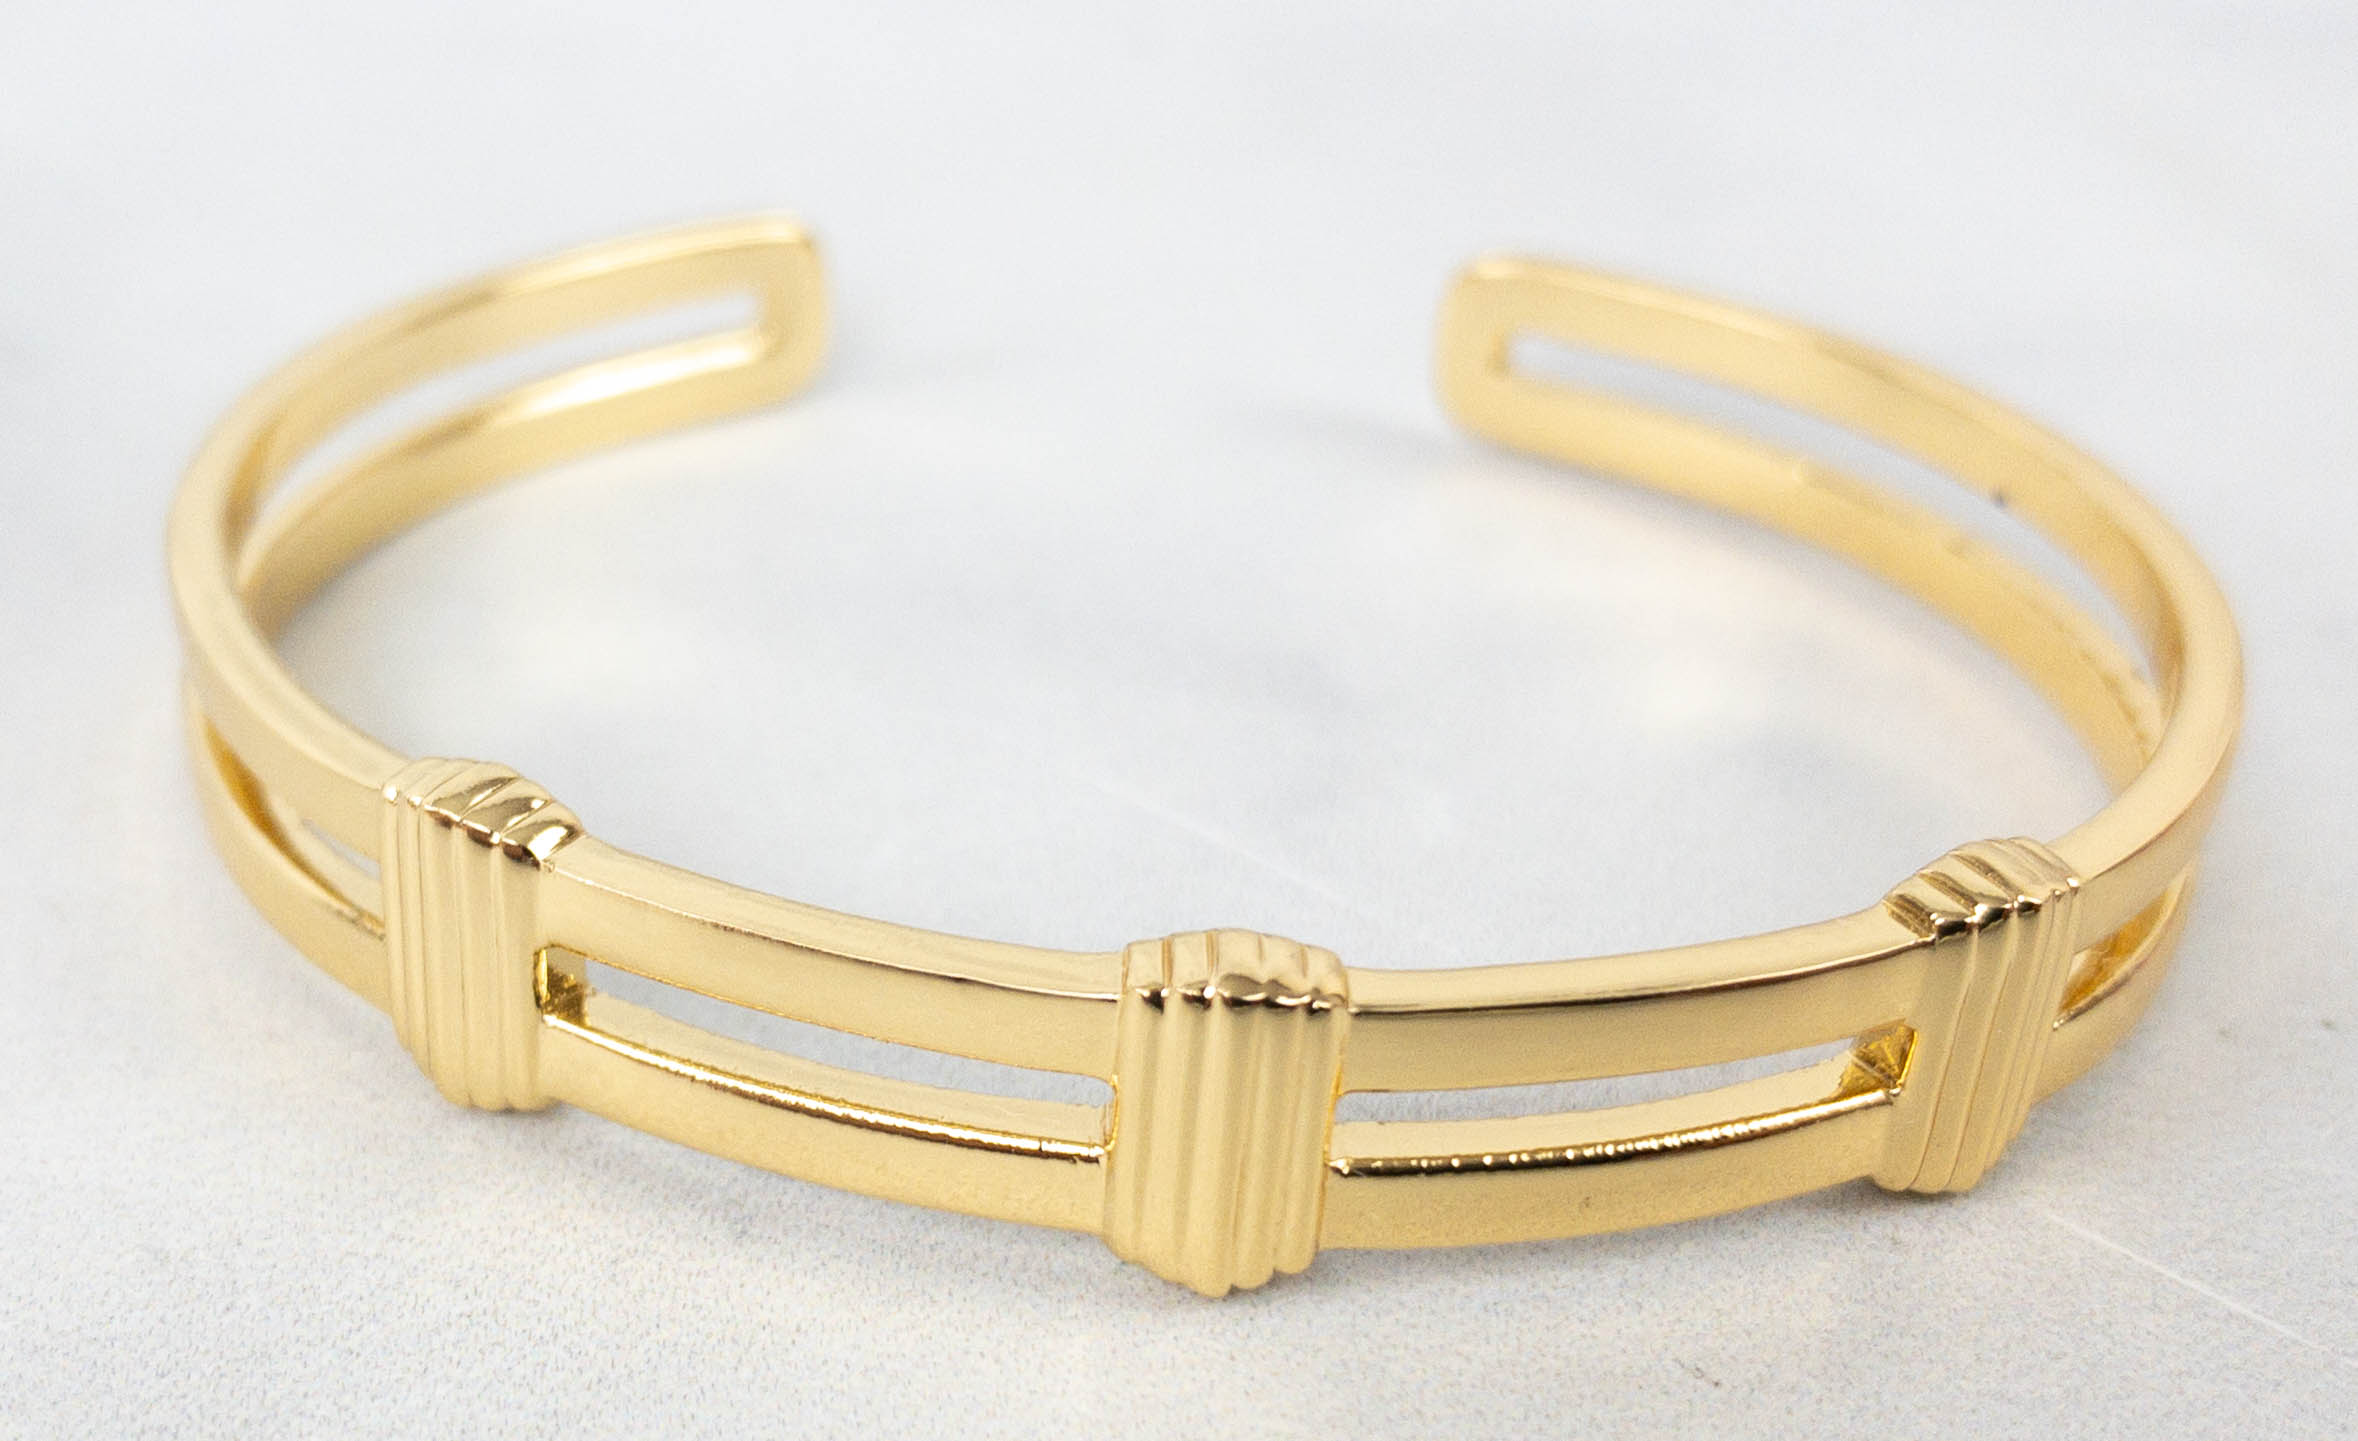 Chloe x Unicef Bracelet Jewelry $210